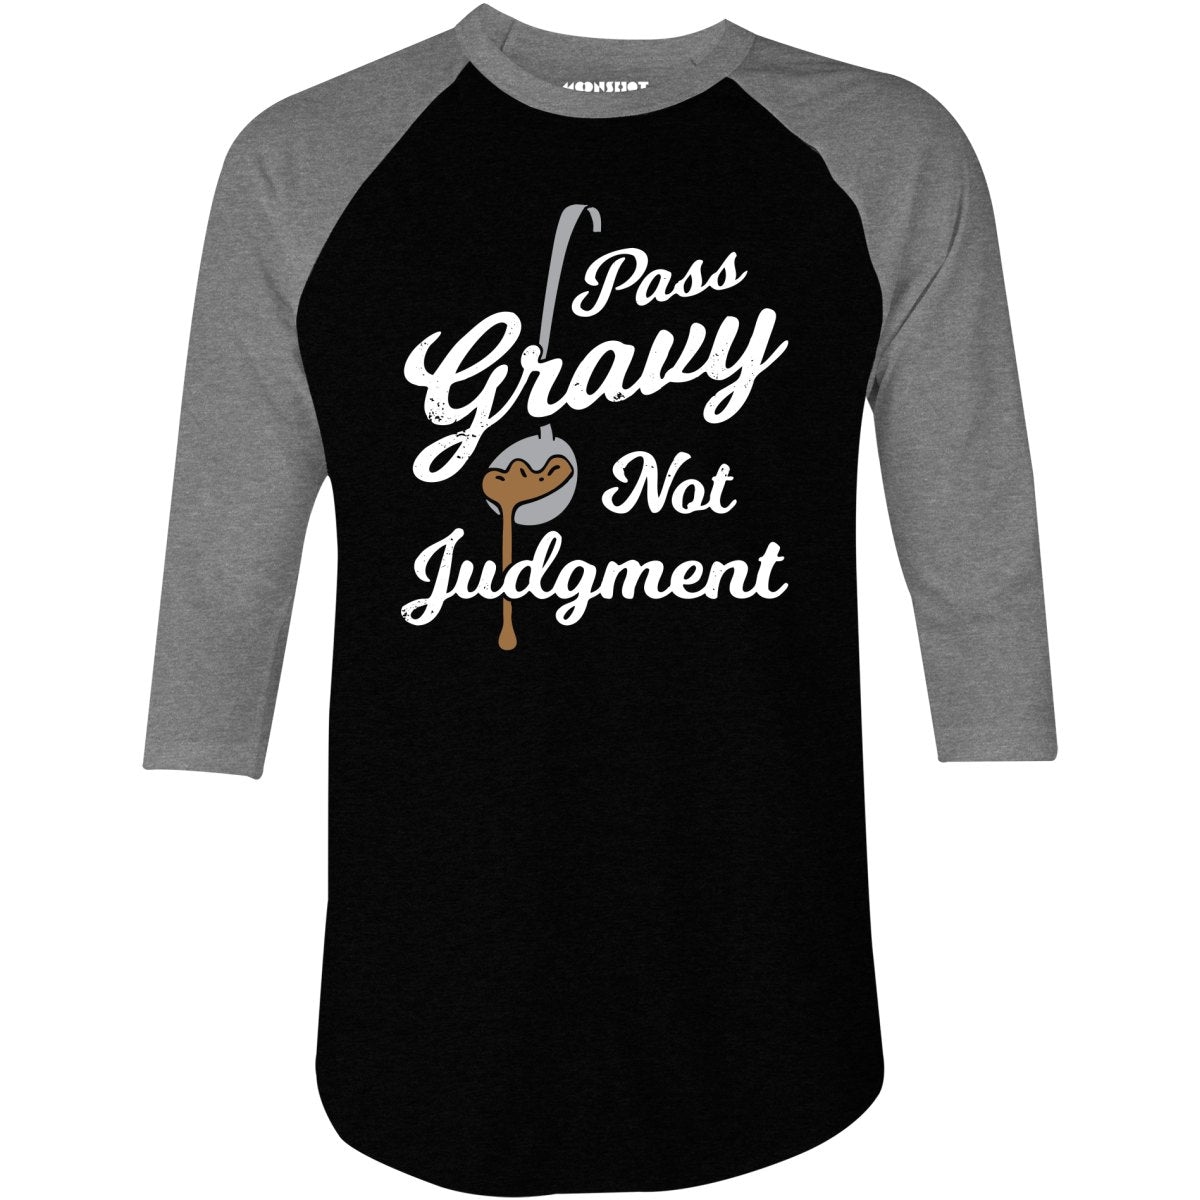 Pass Gravy Not Judgment - 3/4 Sleeve Raglan T-Shirt